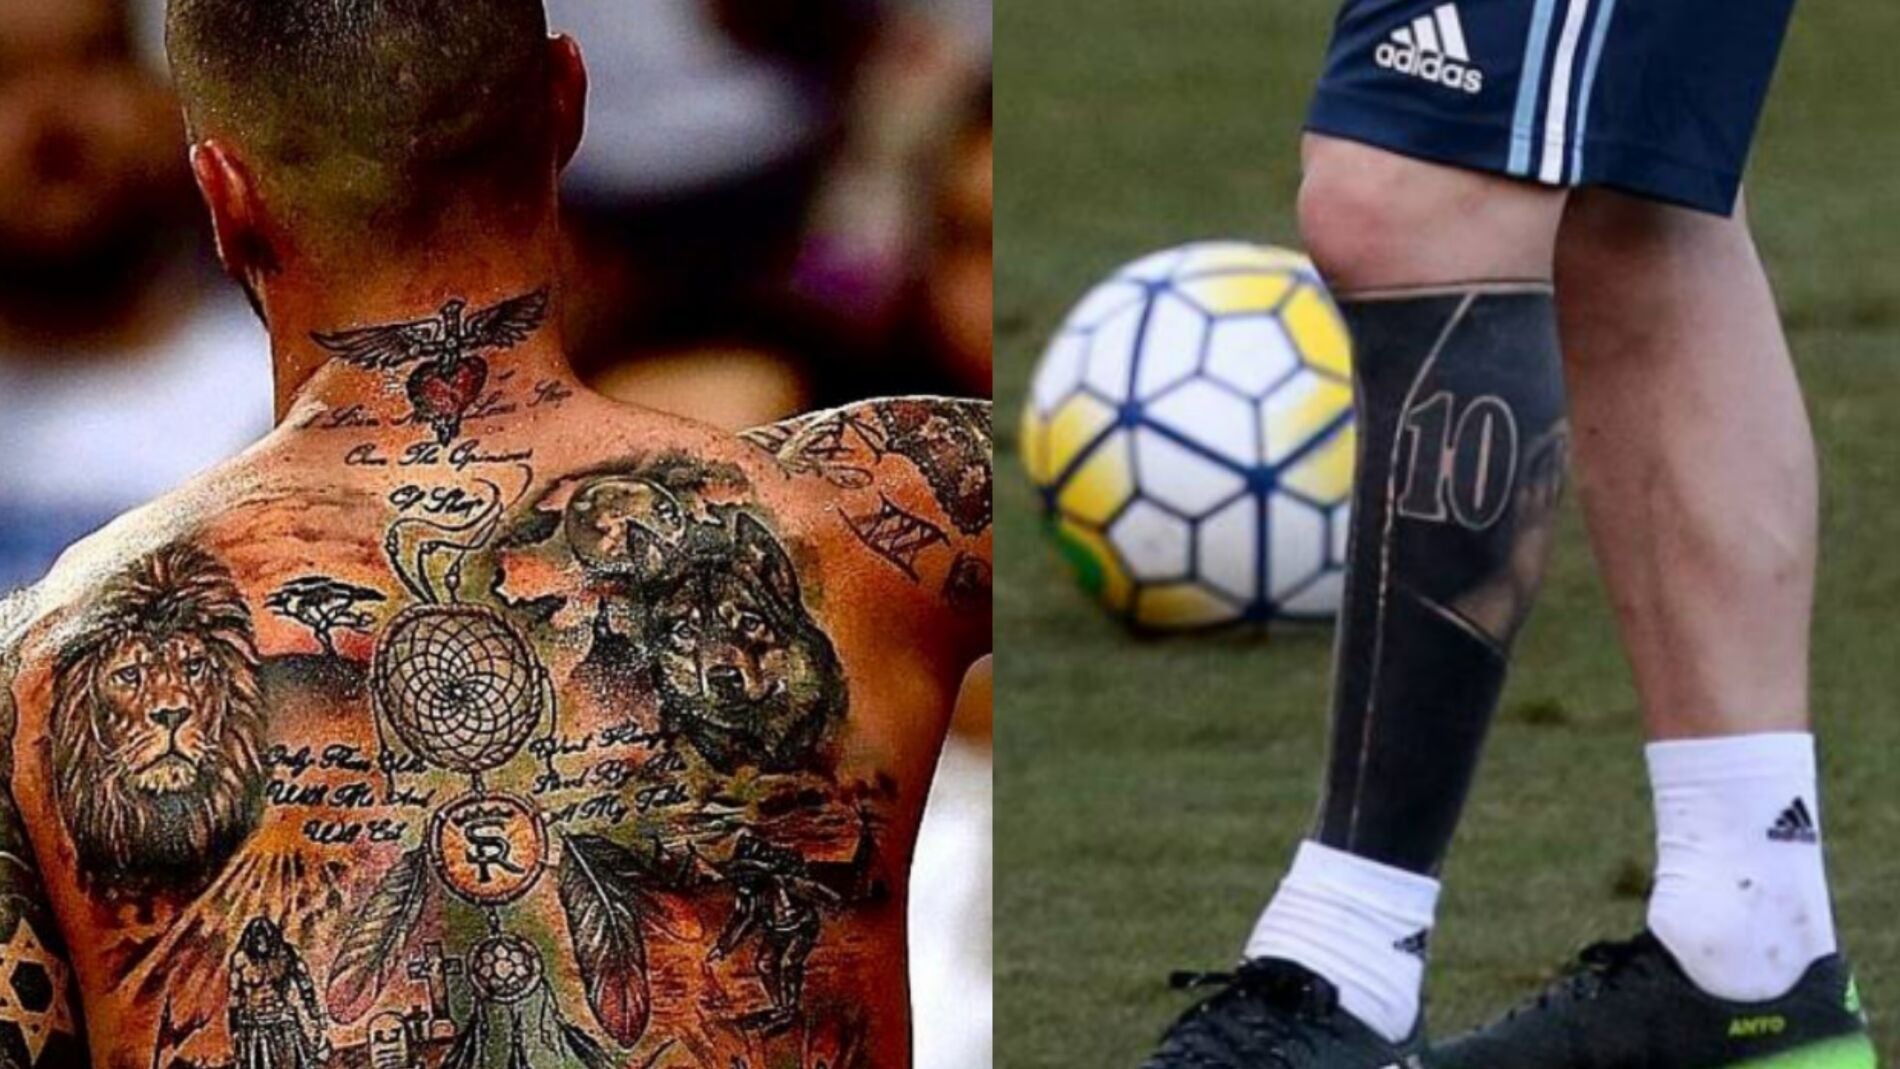 Tatuajes y futbolistas, una moda peligrosa: estos son los graves riesgos para su salud